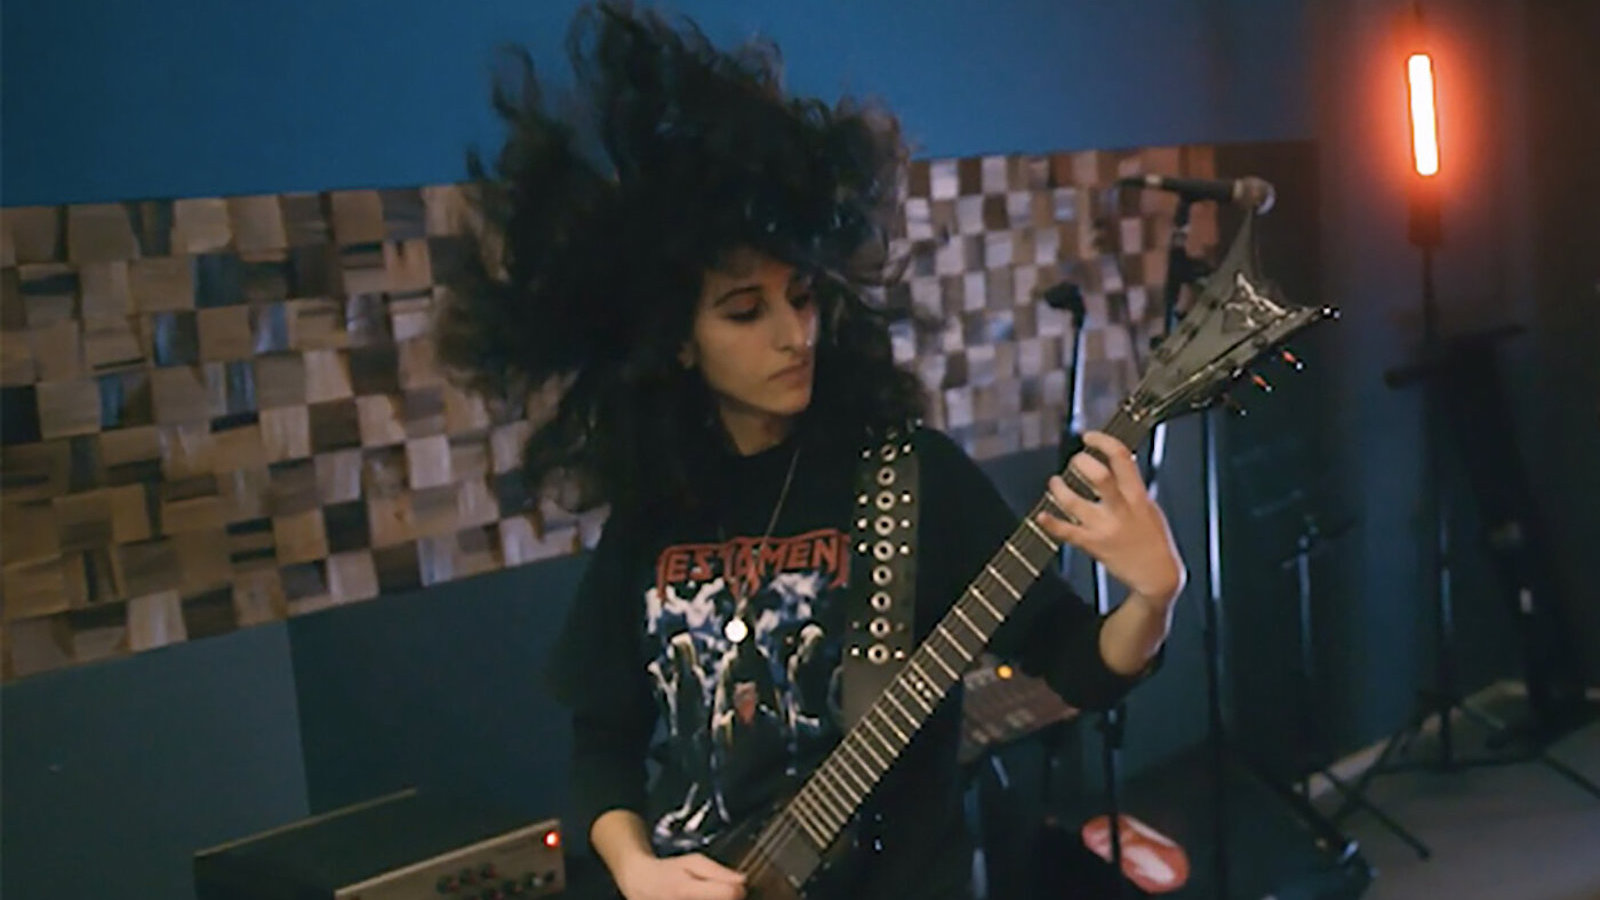 A woman plays guitar, her mass of black hair blown upwards